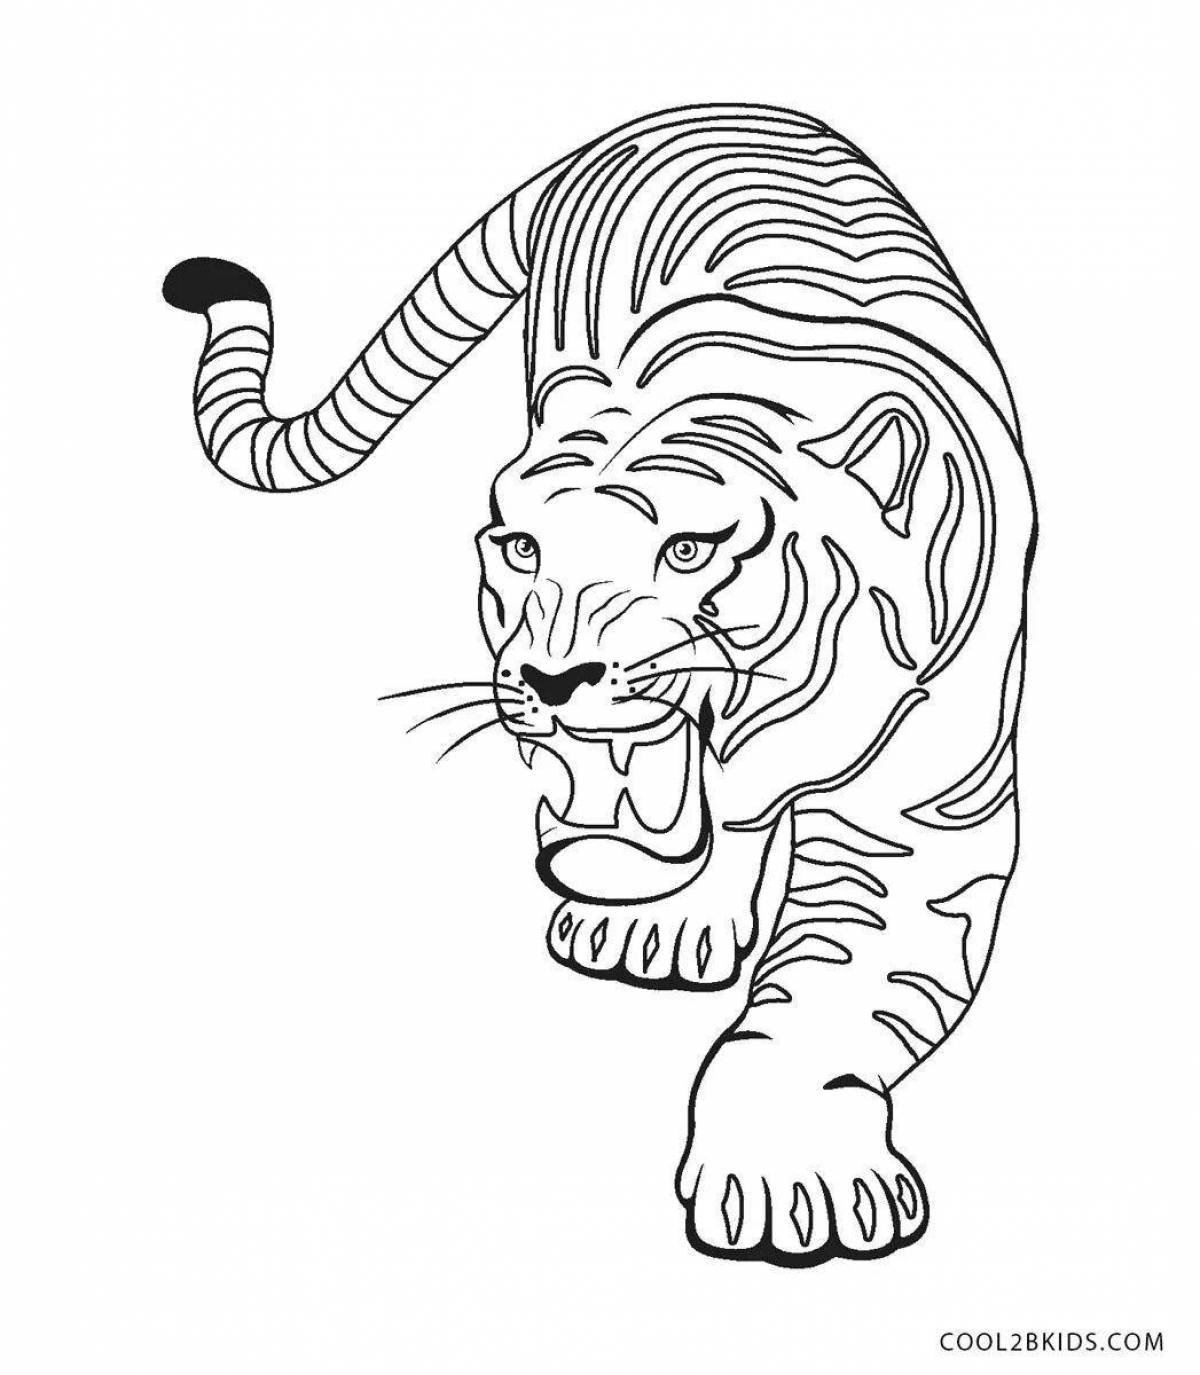 Tiger drawing #5